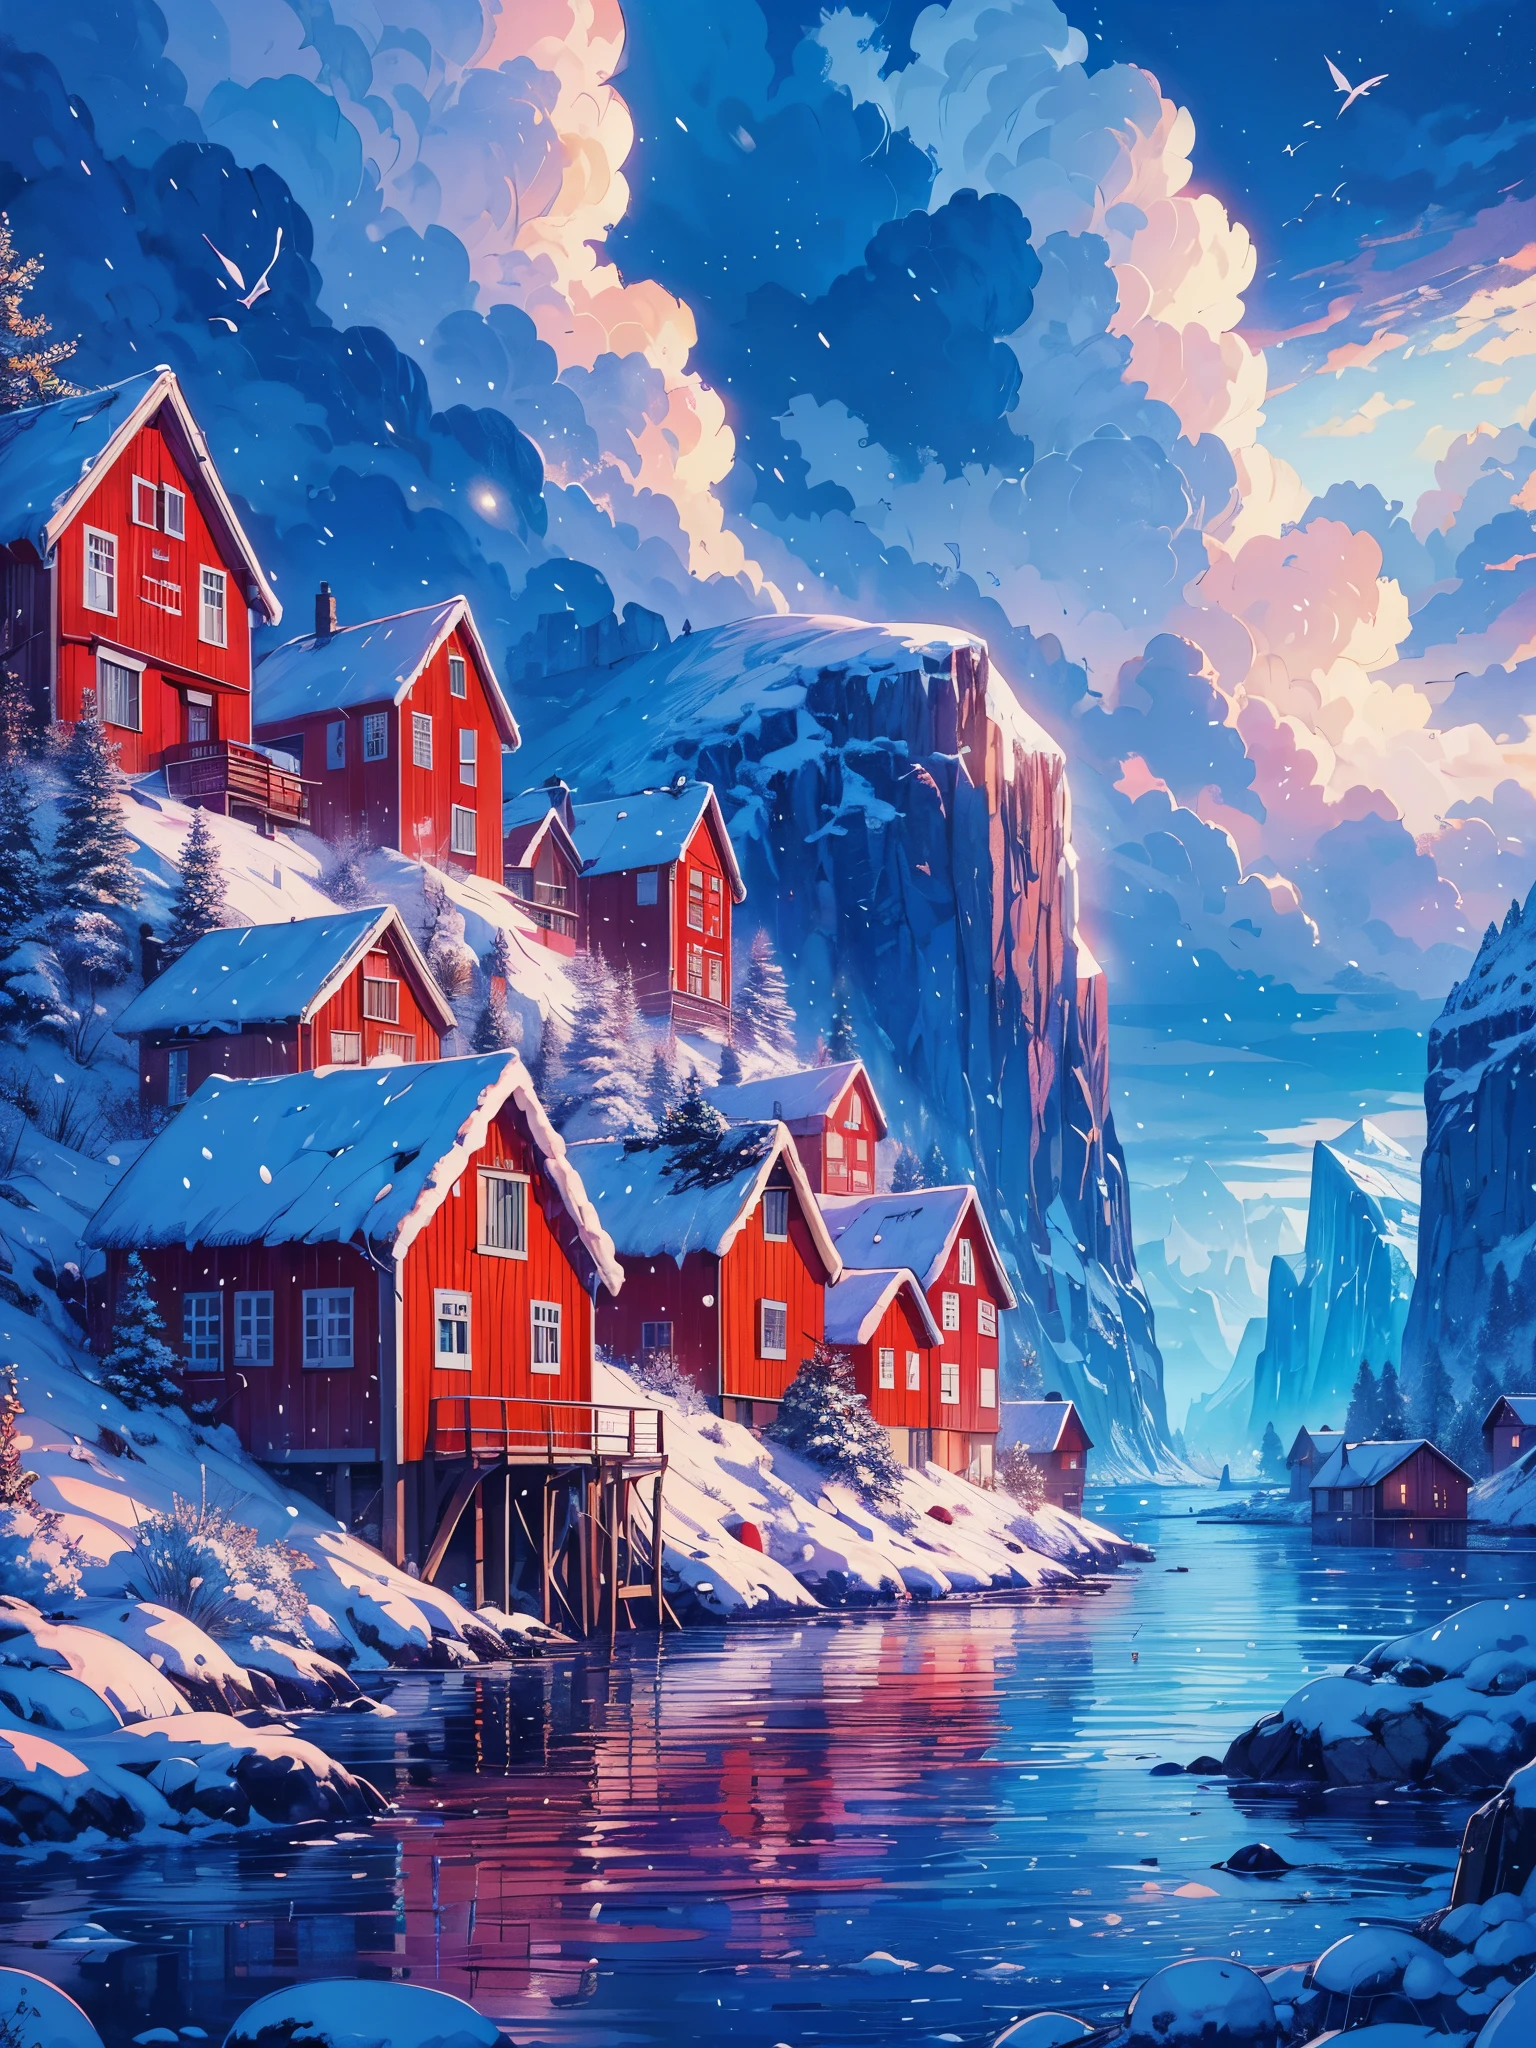 Zeichnen Sie eine digitale Anime-Kunst einer breiten Lofi-Szene mit roten Häusern auf einer norwegischen Insel in der Nähe eines Sees mit Eisberg, Schneefall, Abendzeit, Blaue Stunde, schöner bewölkter Himmel, lebendige Farbtöne, Meisterwerk, friedliche Szene